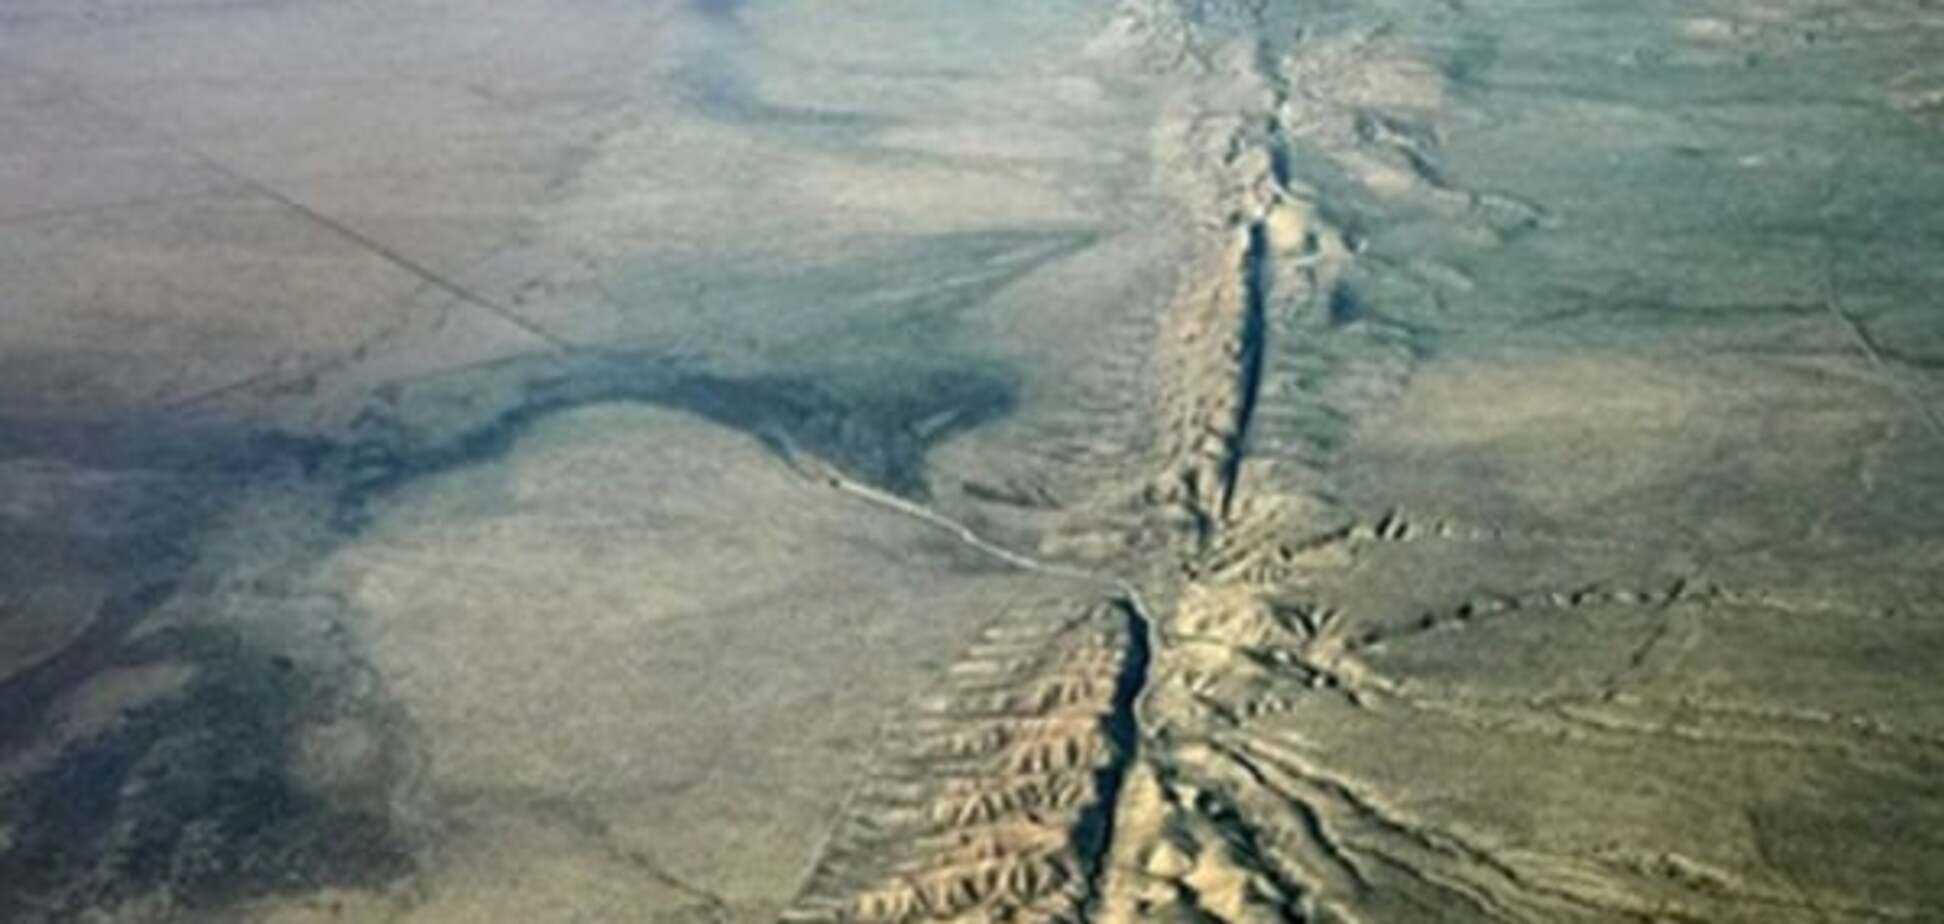 Луна и Солнце может влиять на землетрясения в Калифорнии - ученые